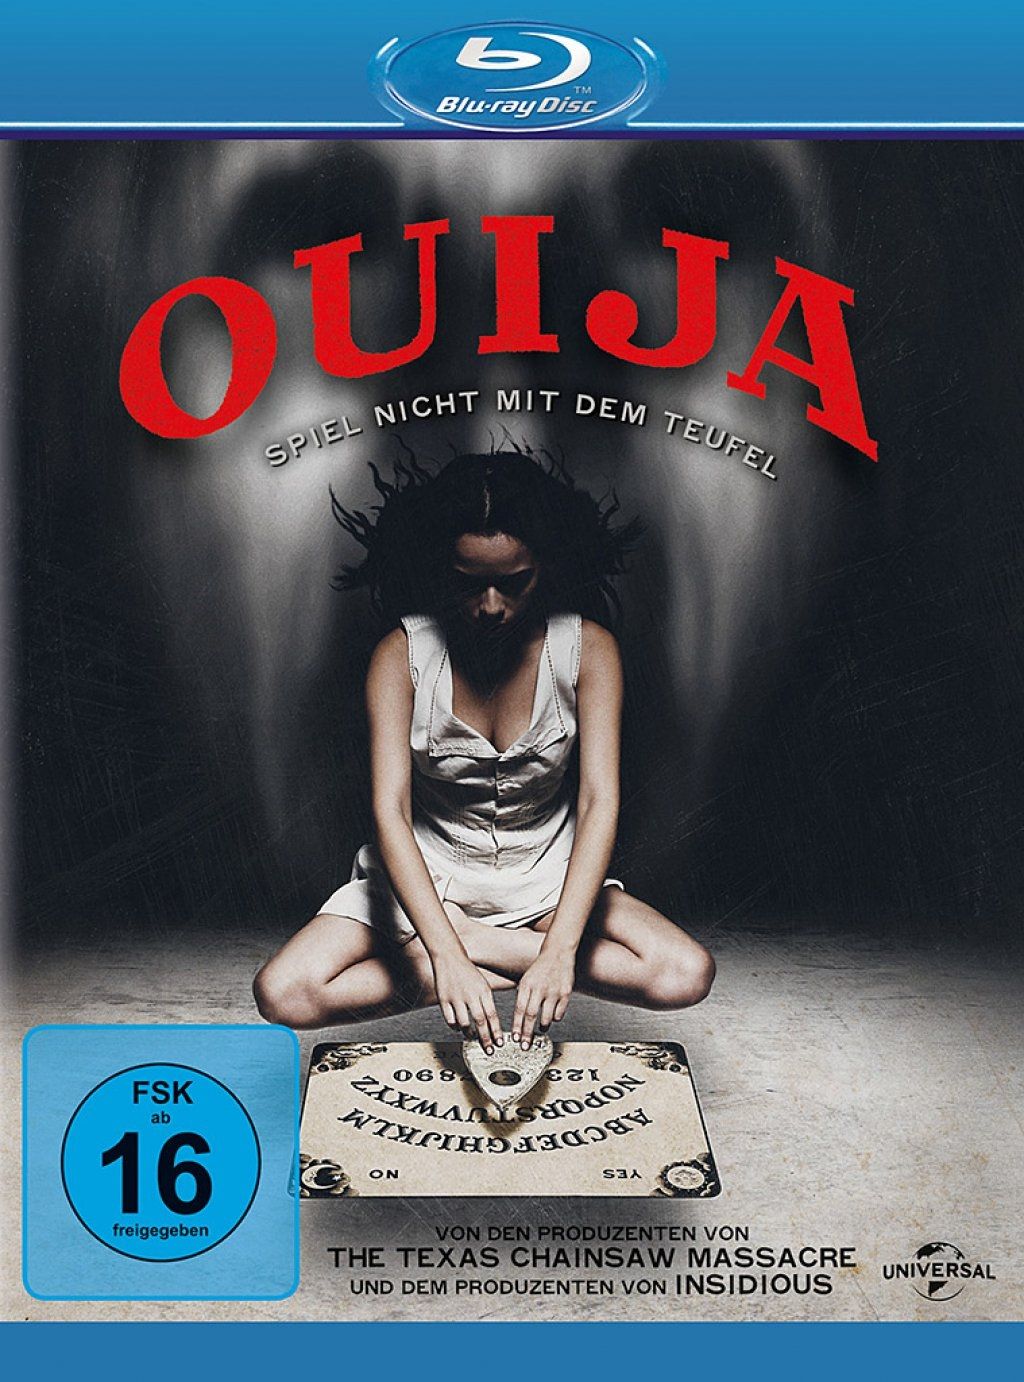 Ouija - Spiel nicht mit dem Teufel (BLURAY)